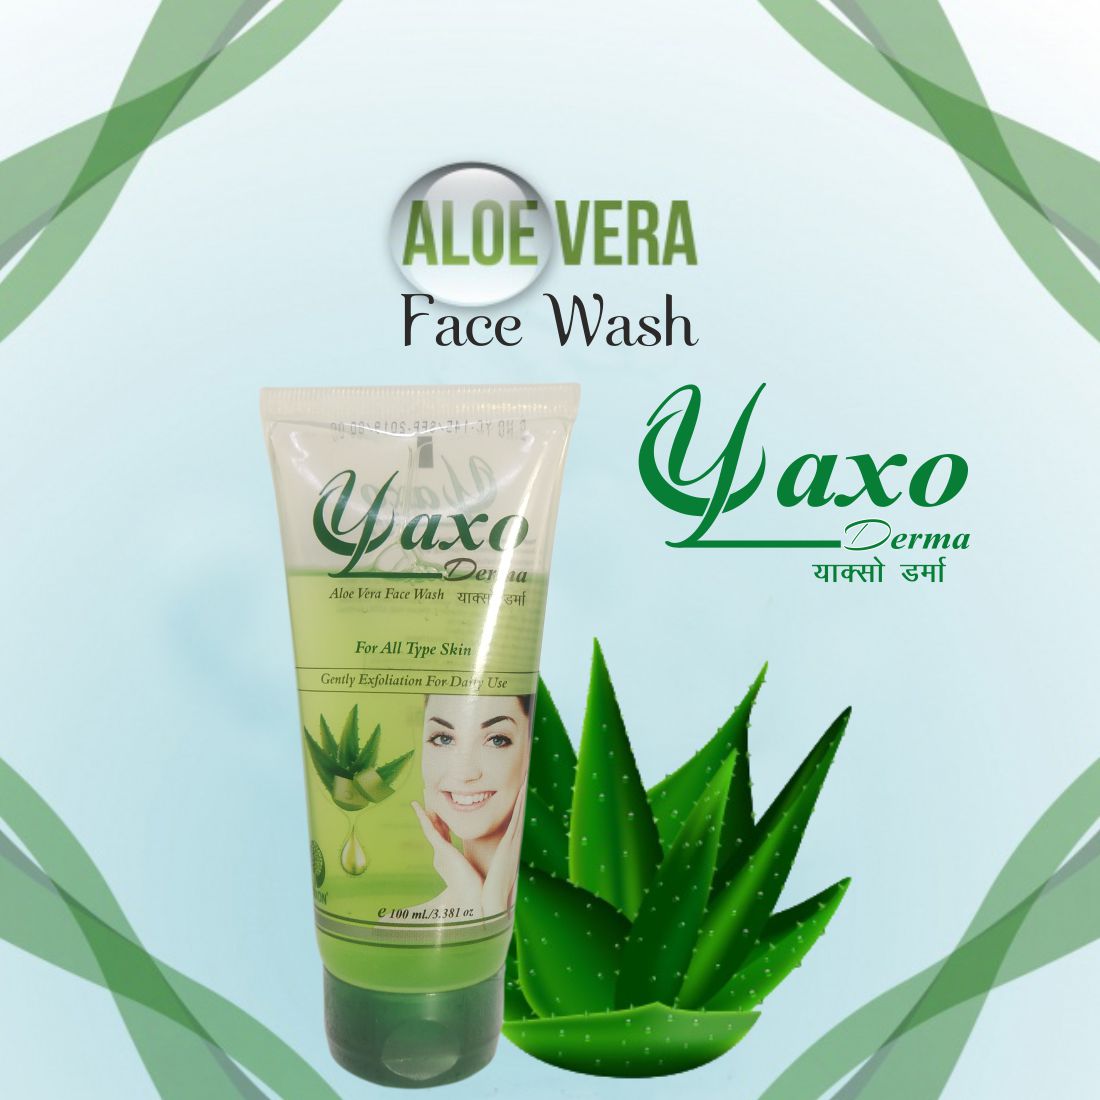 YAXO DERMA Aloe Vera Face Wash Combo